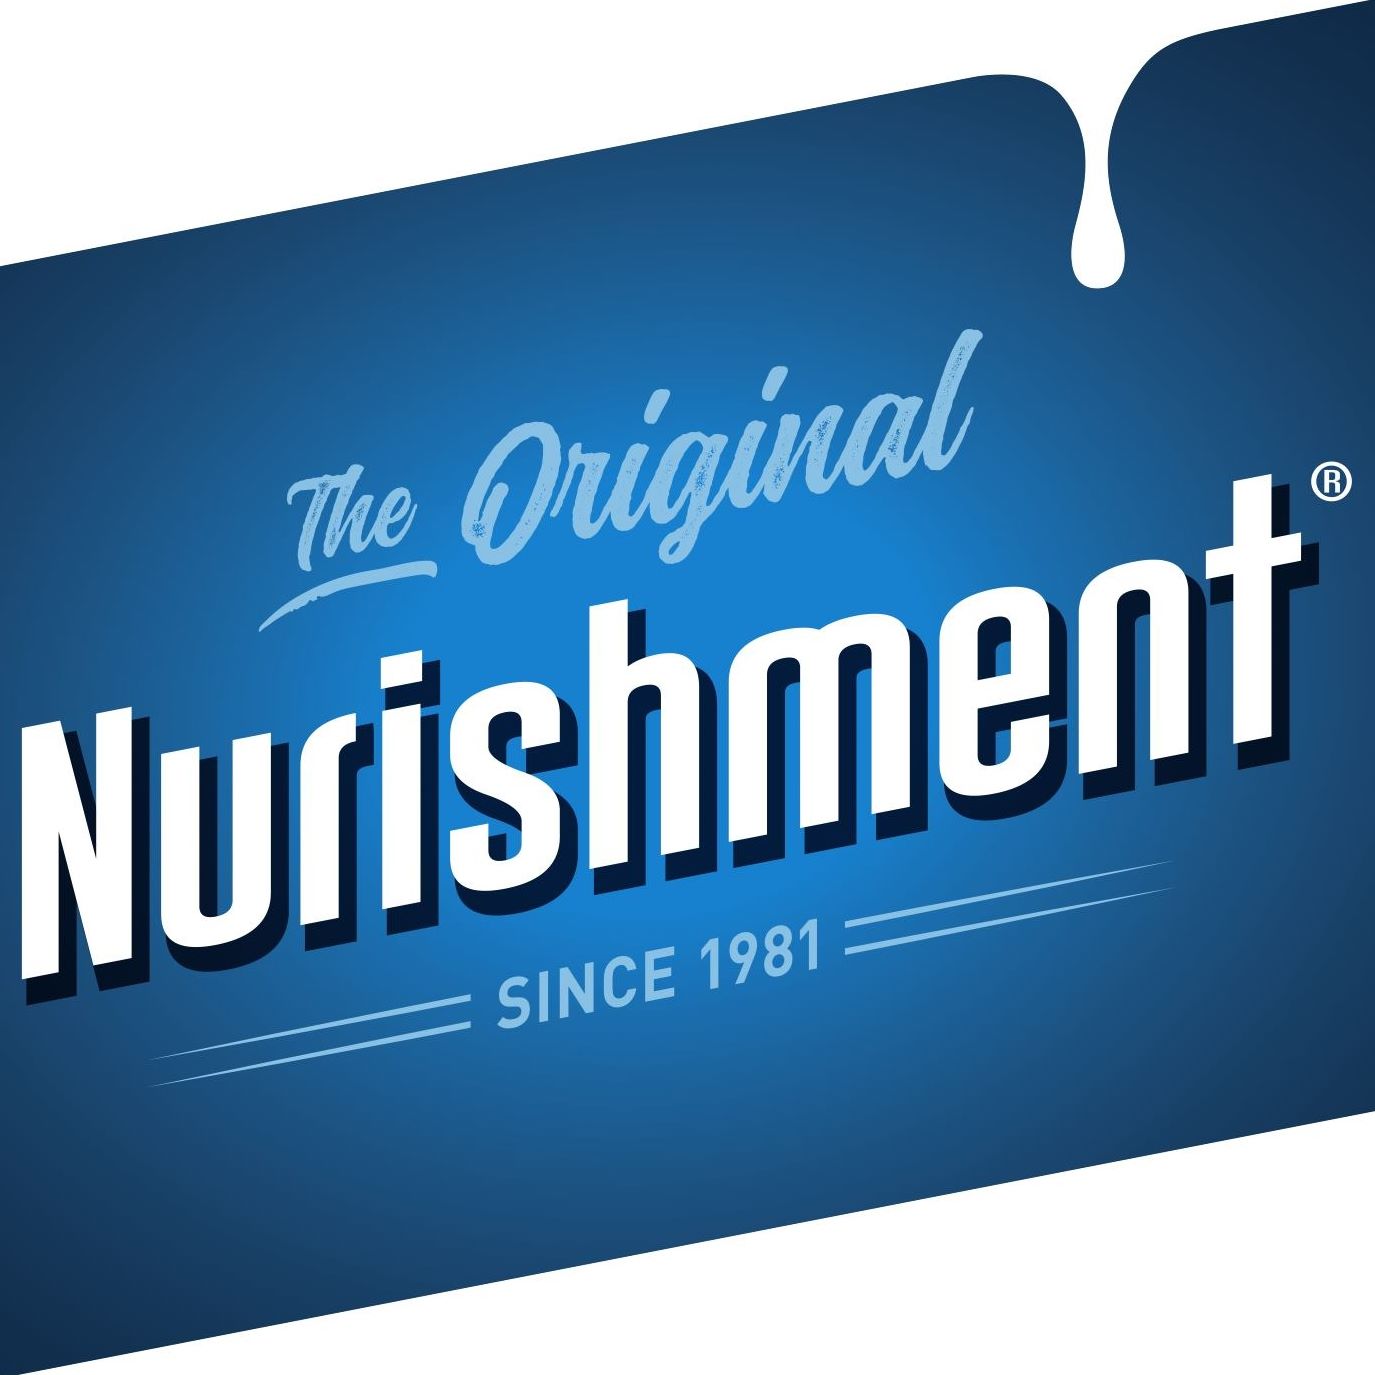 Nurishment brand logo